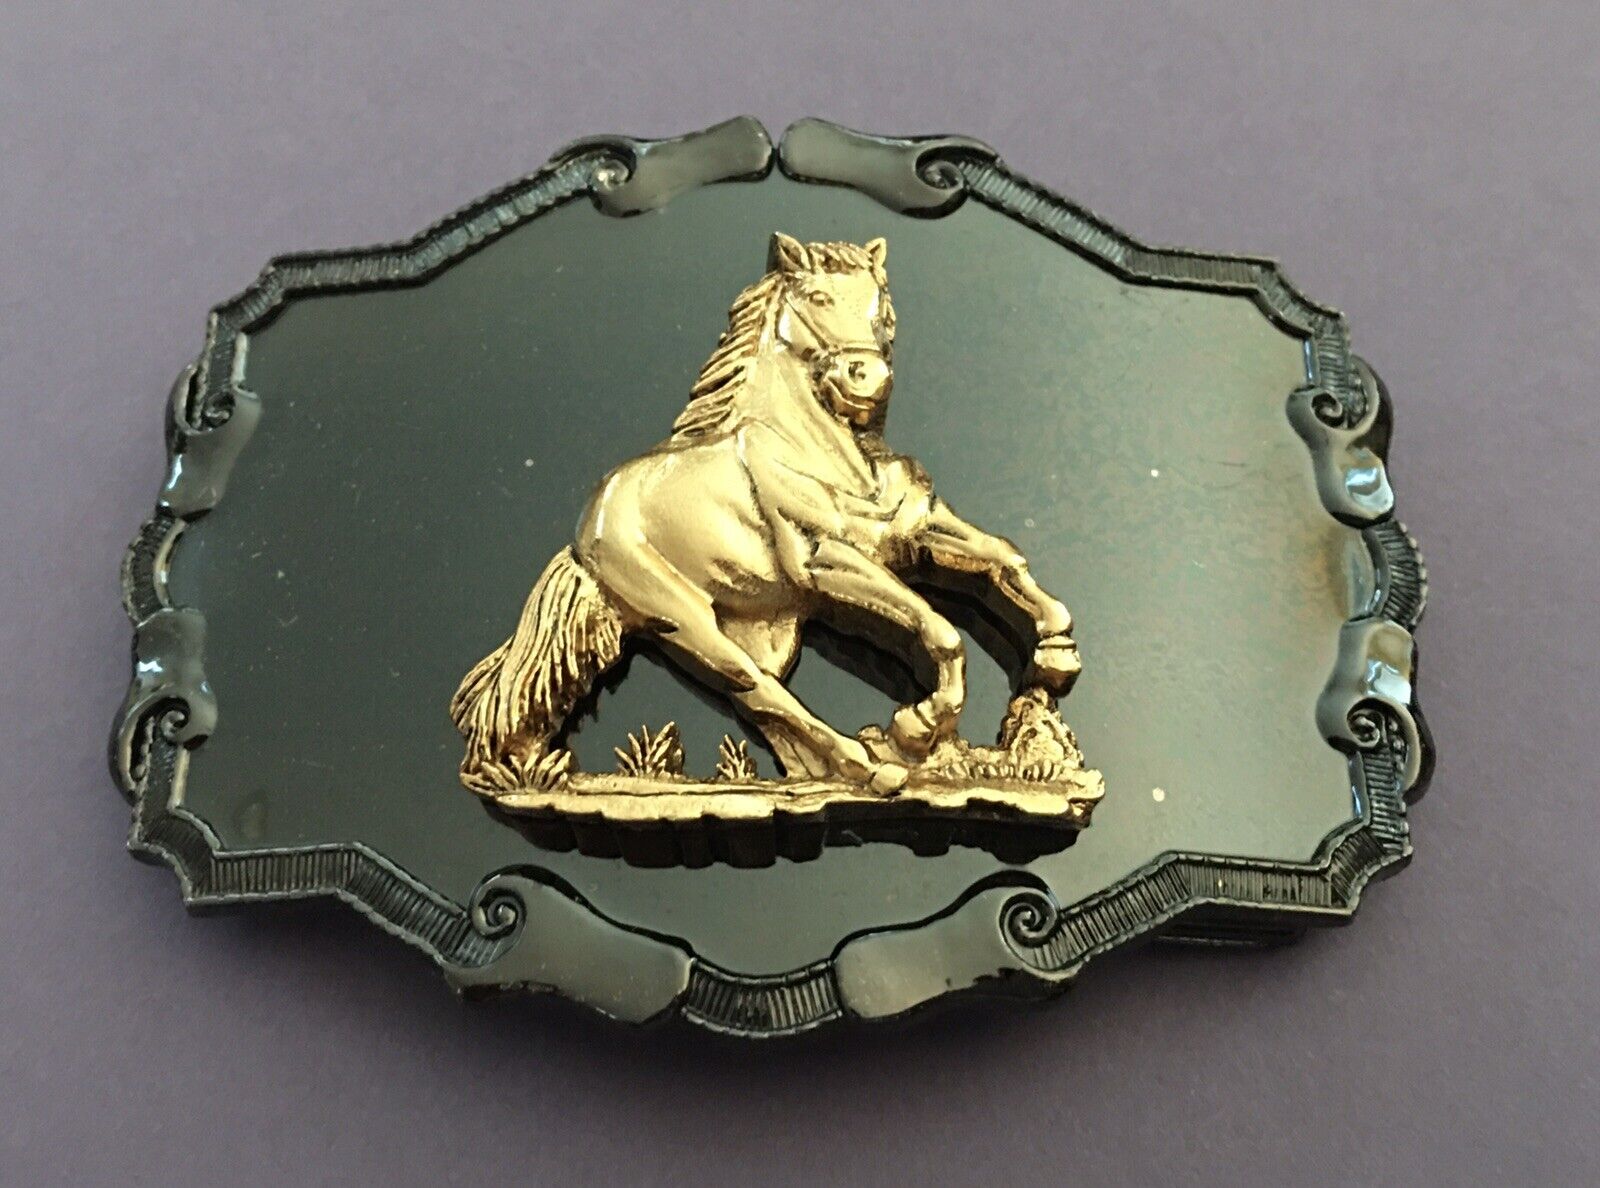 VTG 1978 Raintree Rare Design Golden Wild Stallion American Cowboy Belt Buckle